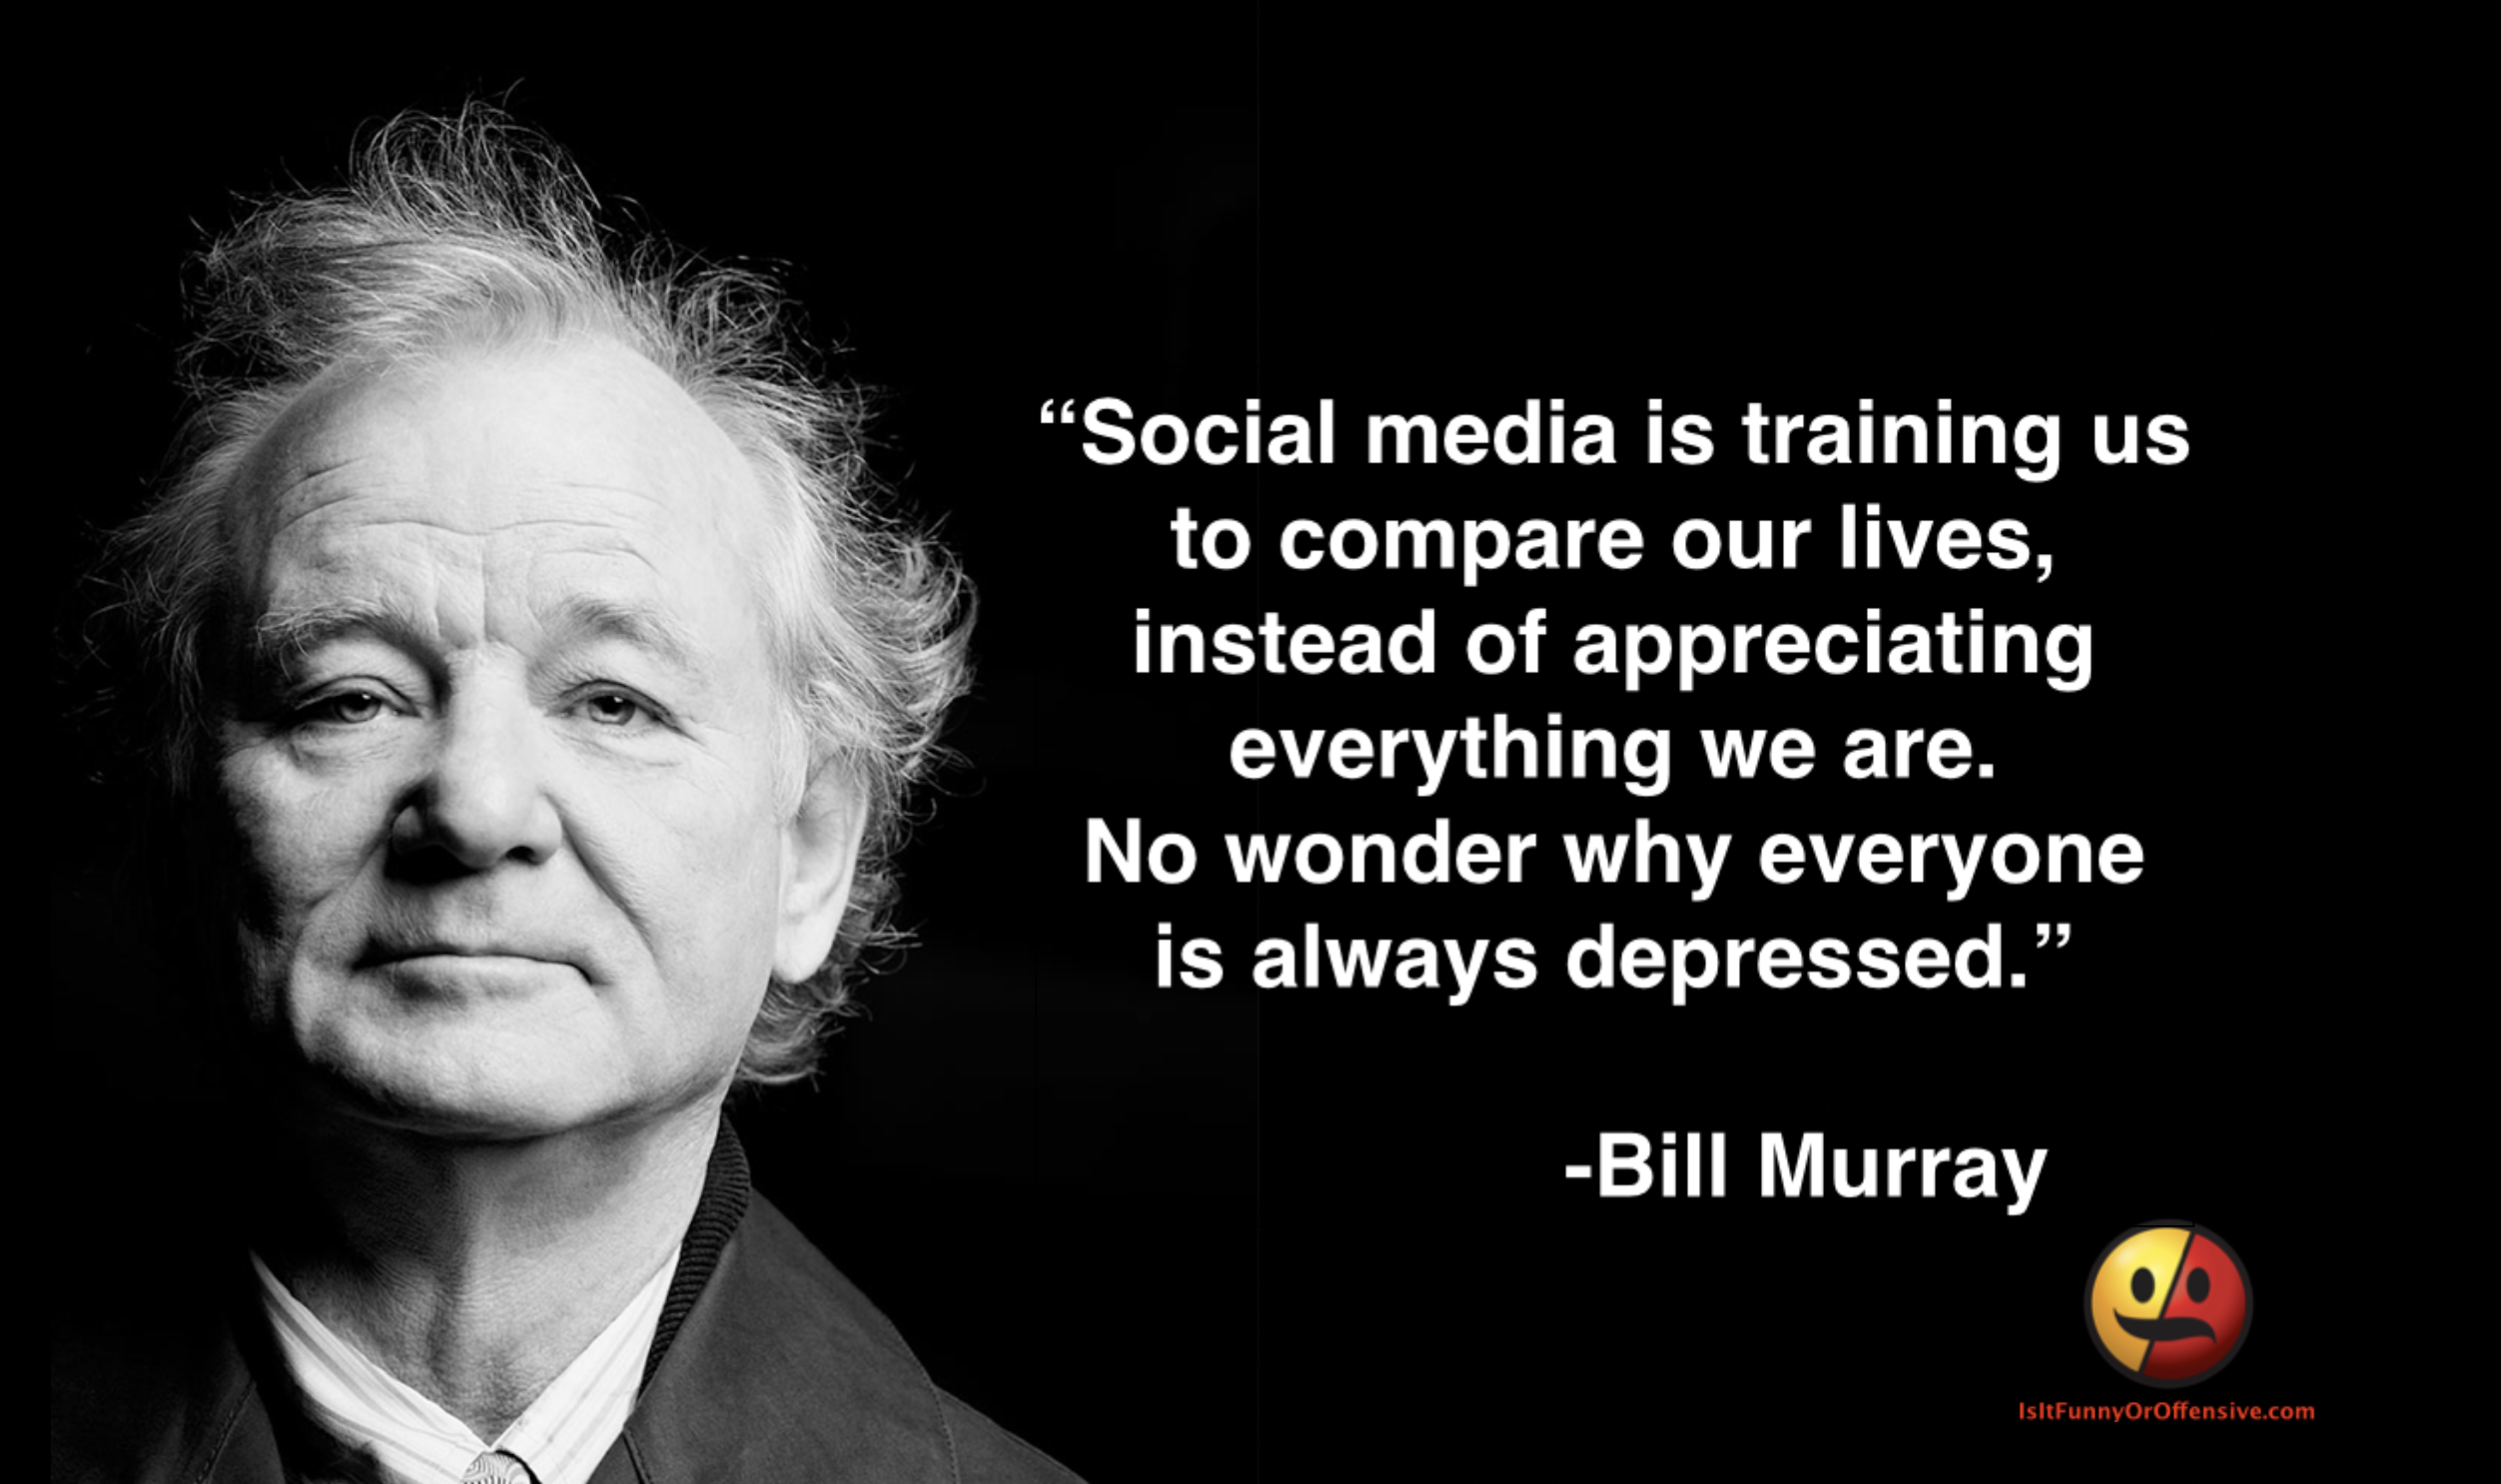 Bill Murray on Social Media